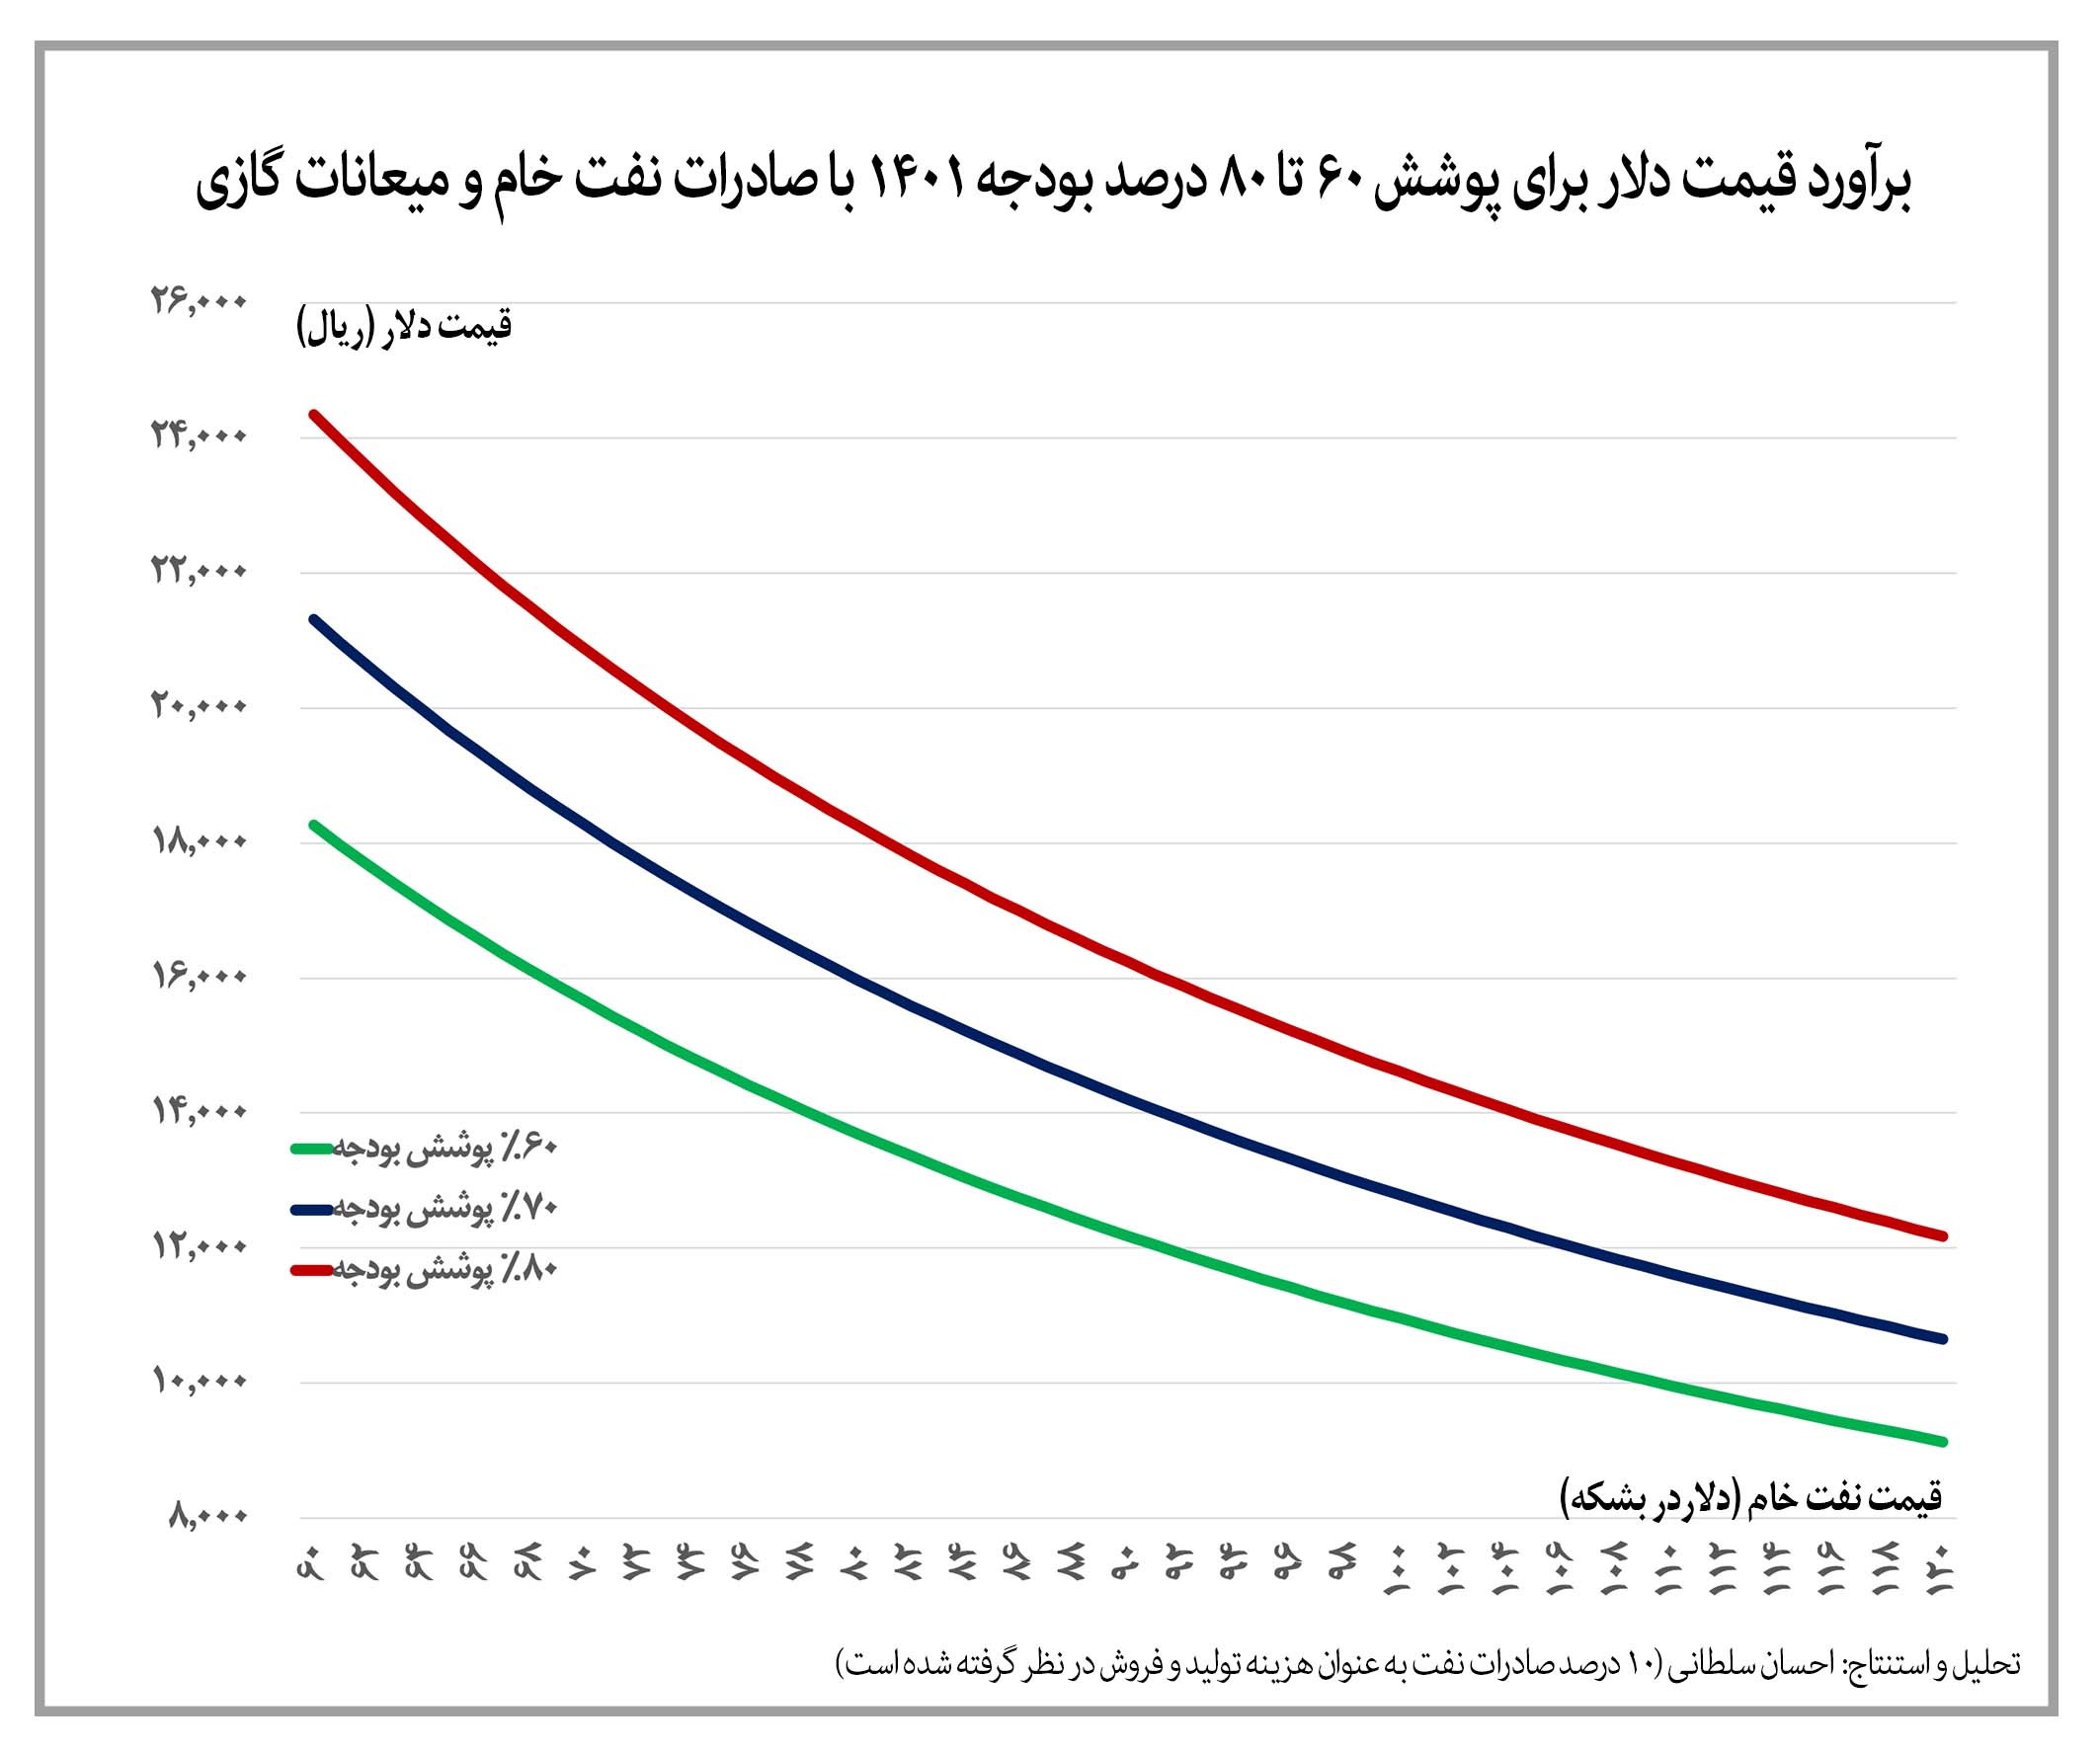 افزایش ارزش ریالی صادرات نفت خام ایران به بیش از ۱۰ برابر پیش از تحریم ها